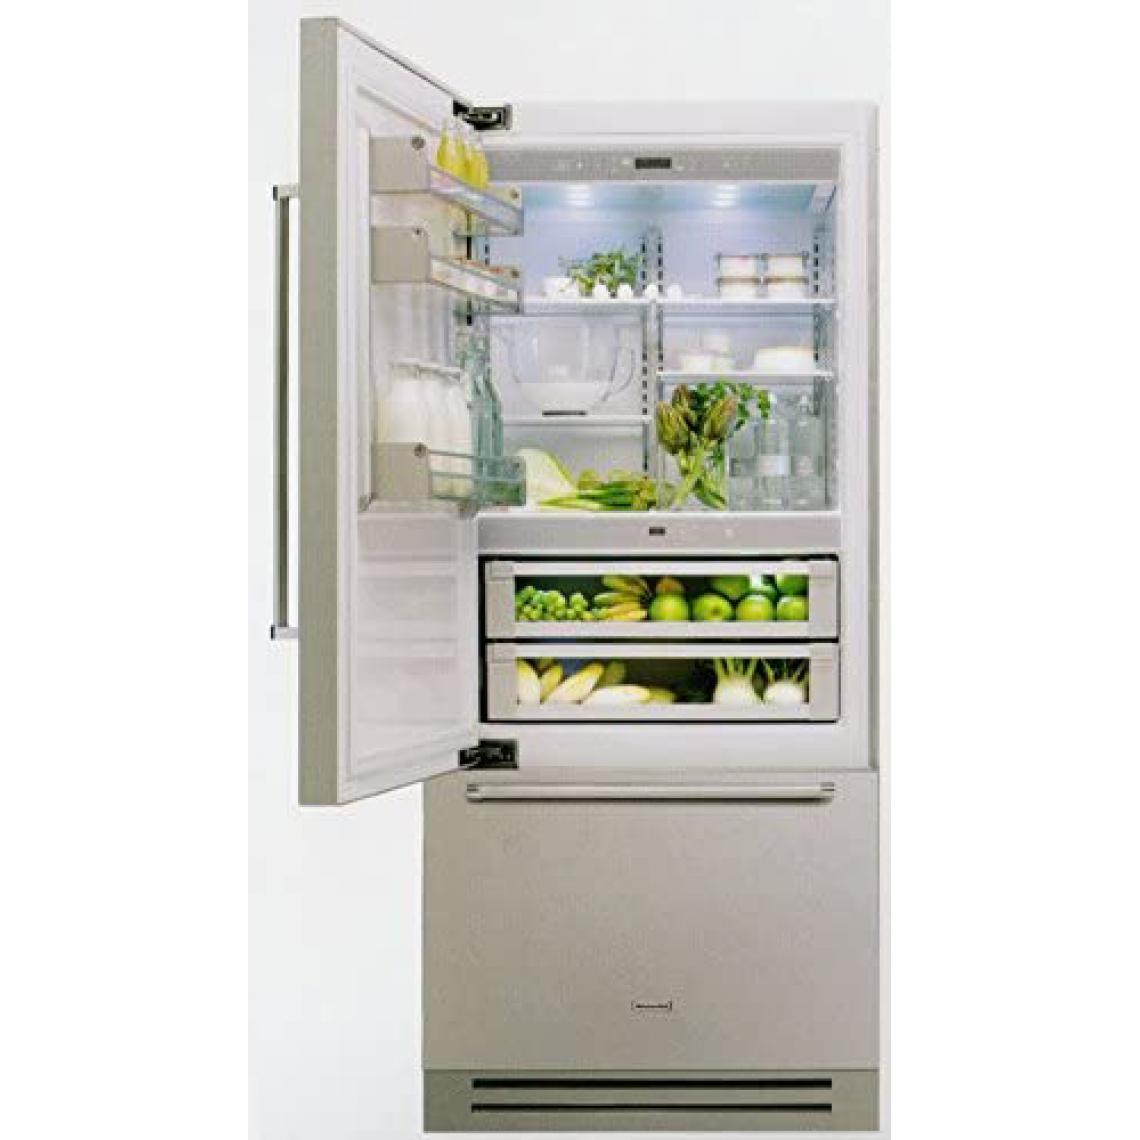 Kitchenaid - Réfrigérateur KITCHENAID Américain Façade Inox INTÉGRABLE KCZCX 20901R - Réfrigérateur américain